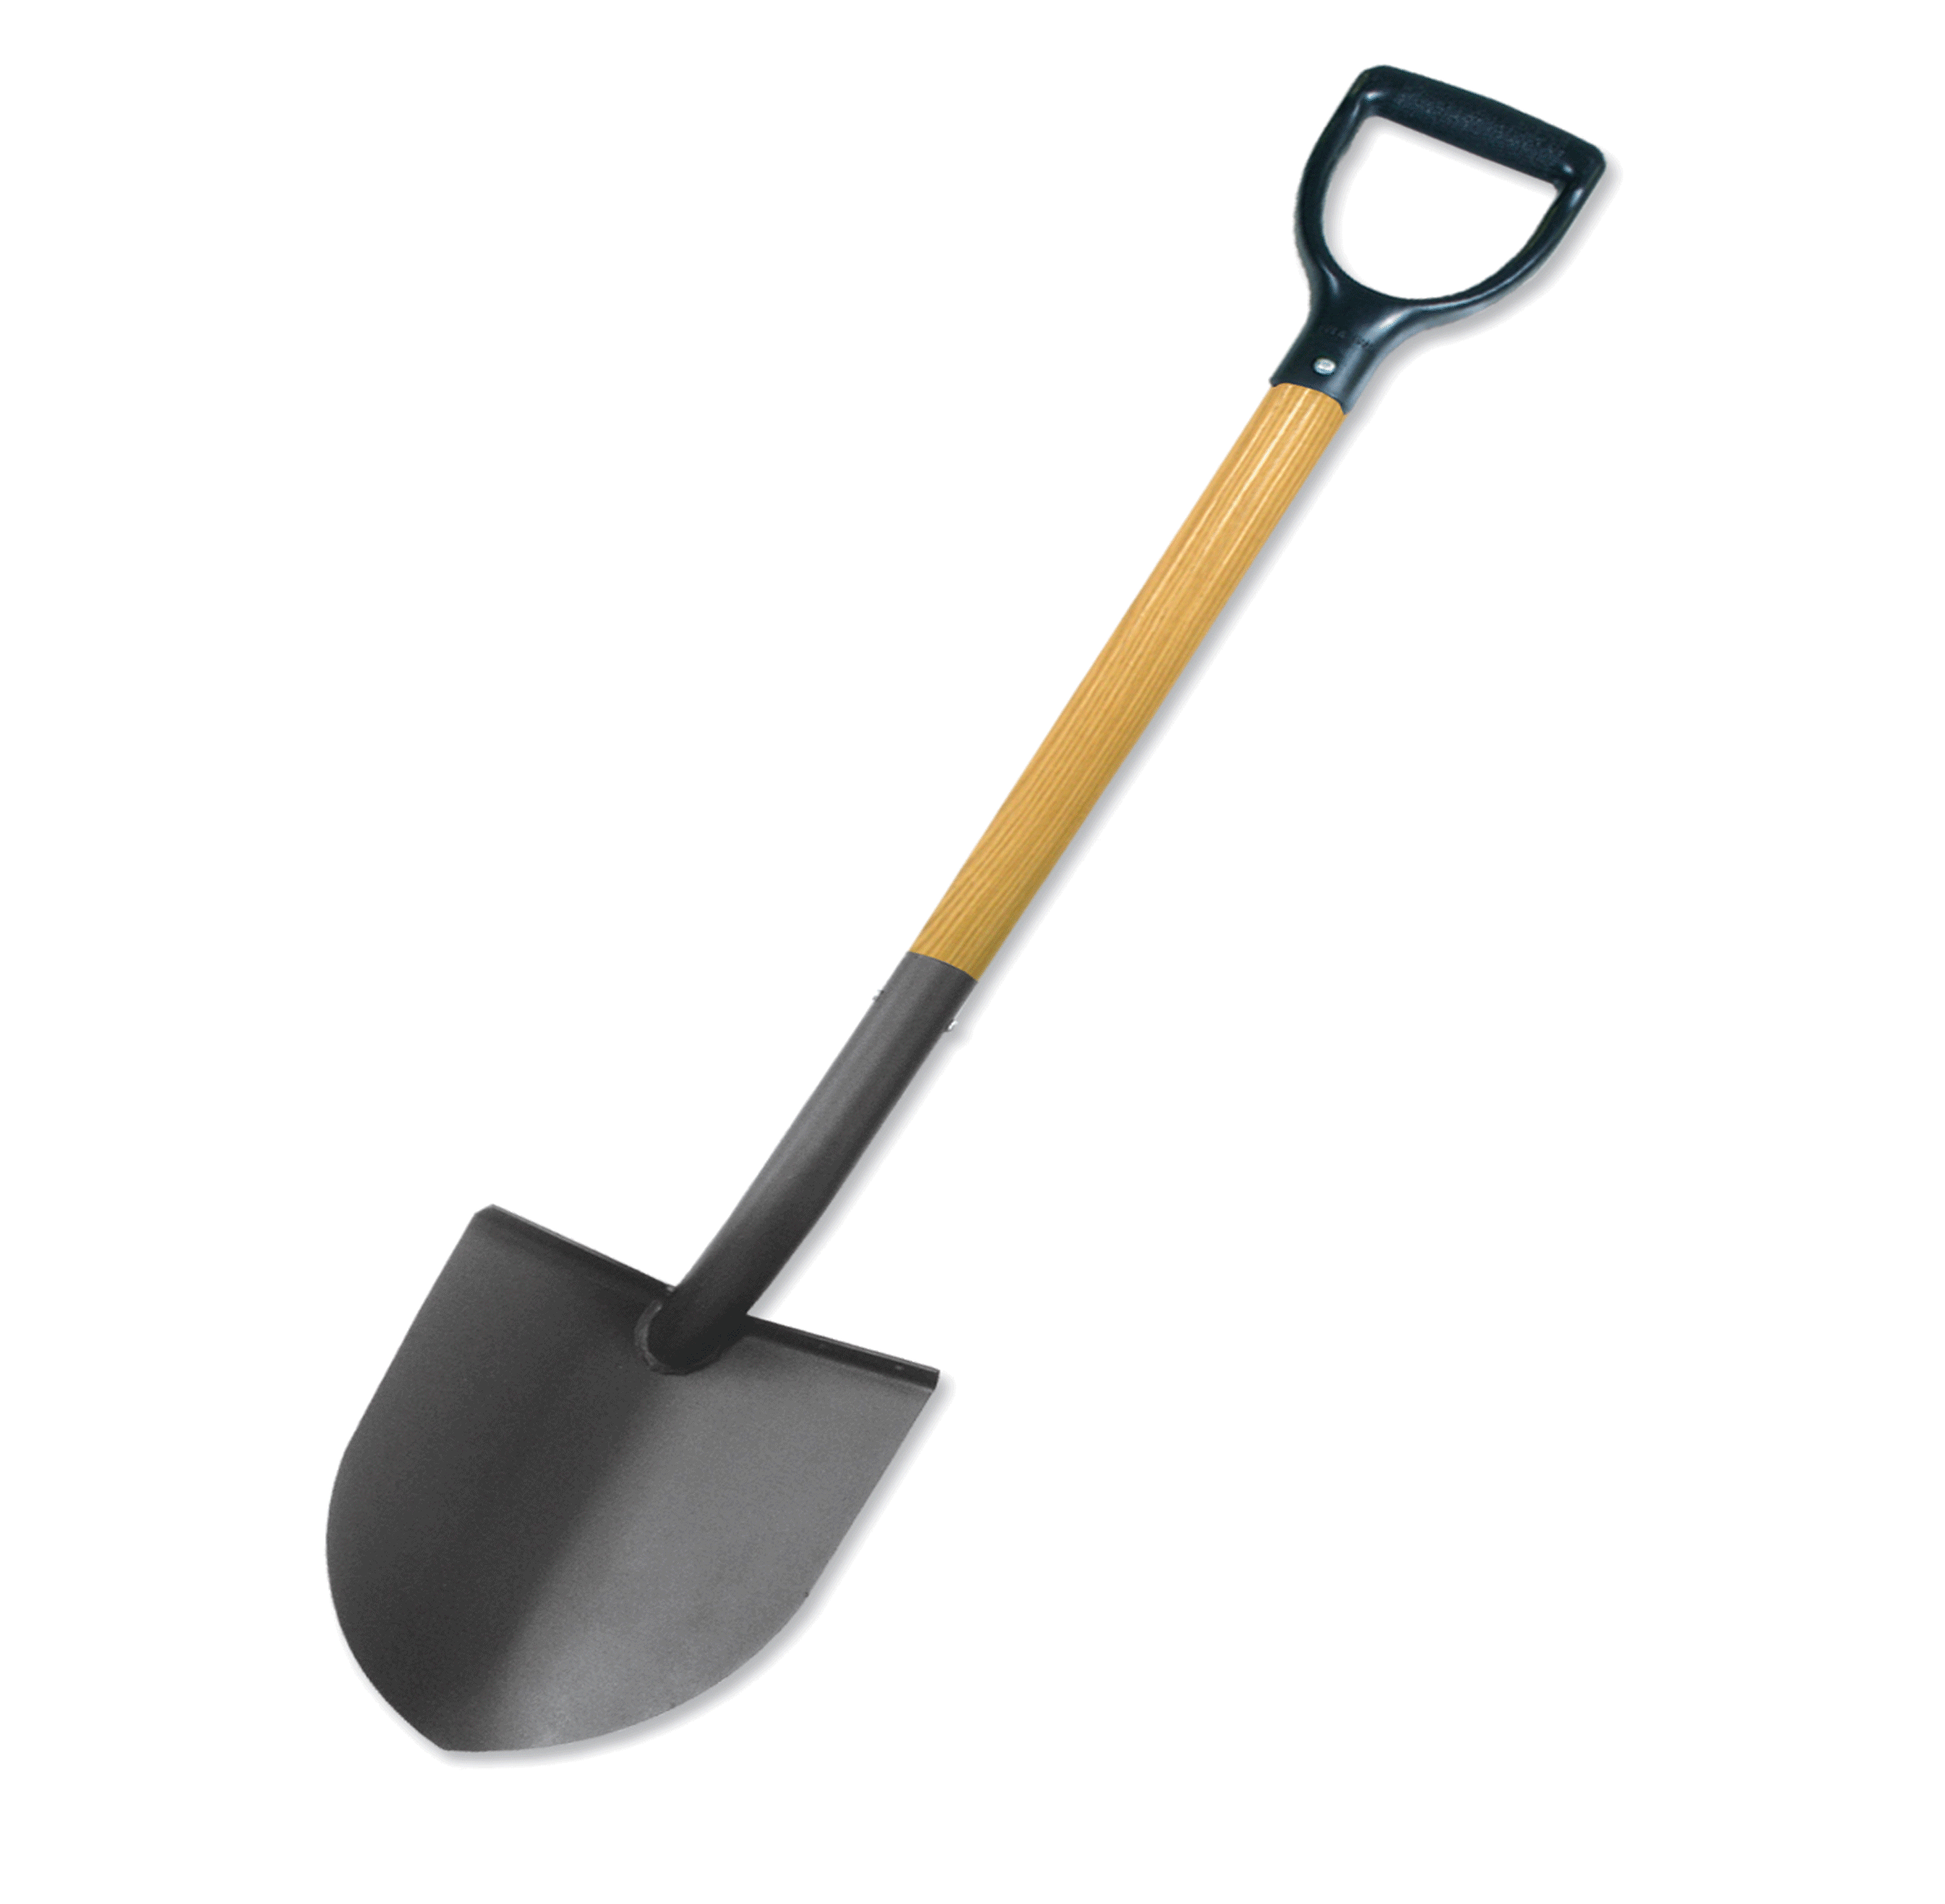 Gardener clipart shovel, Gardener shovel Transparent FREE.